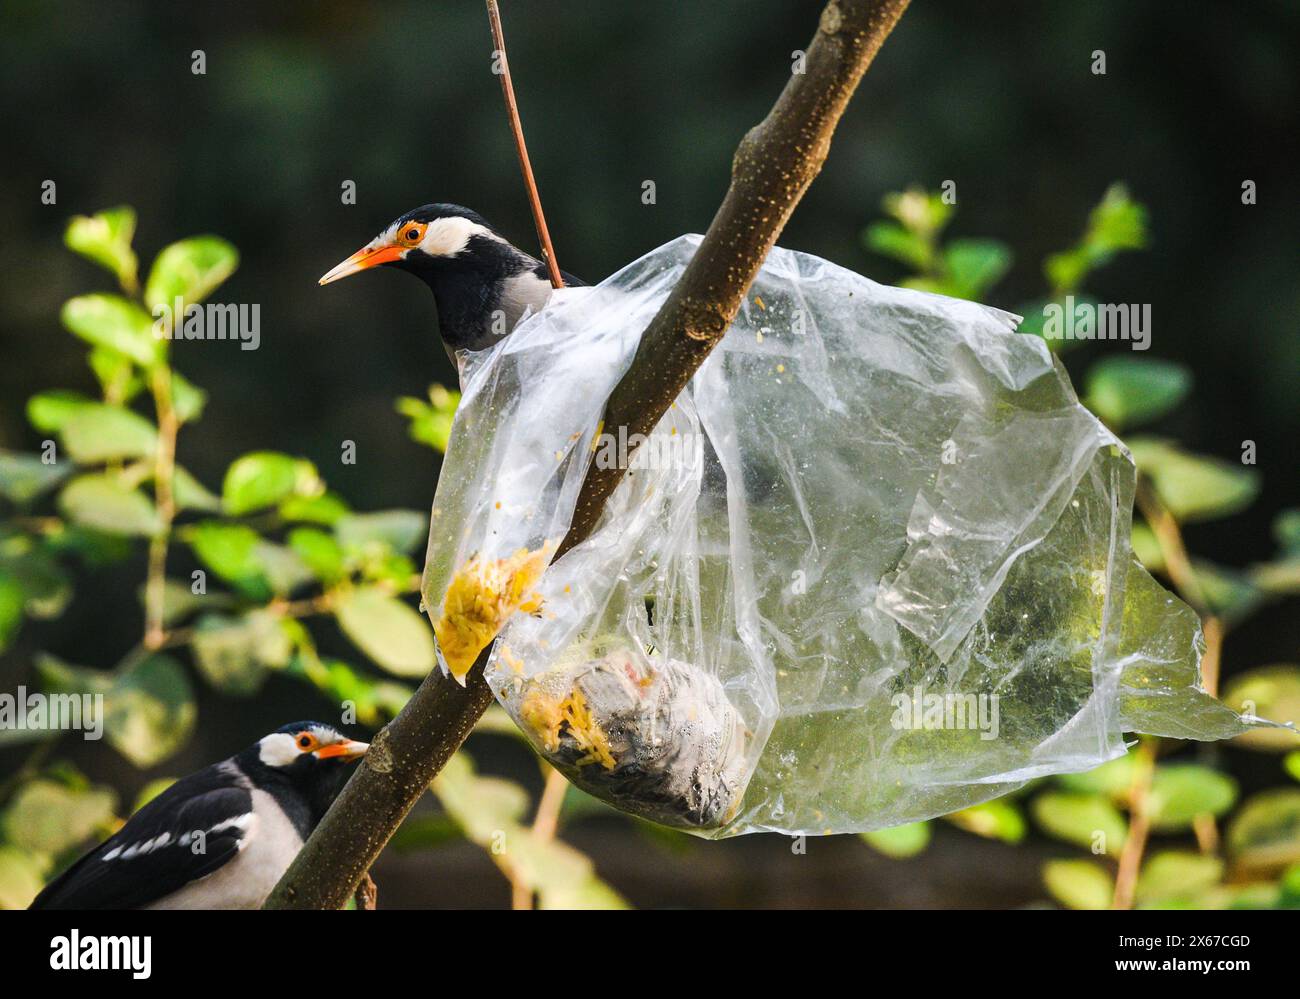 Ein Beutel mit Nahrung aus Polyethylen steckt auf einem Baum fest. Wild Indian Pied Myna (Gracupica contra) Vögel versuchen, das Plastik zu zerreißen und das Futter zu fressen, manchmal stecken ihre Schnäbel im Plastik fest. Es gibt ein nationales Verbot für diese Gegenstände. Tehatta, Westbengalen, Indien. Stockfoto